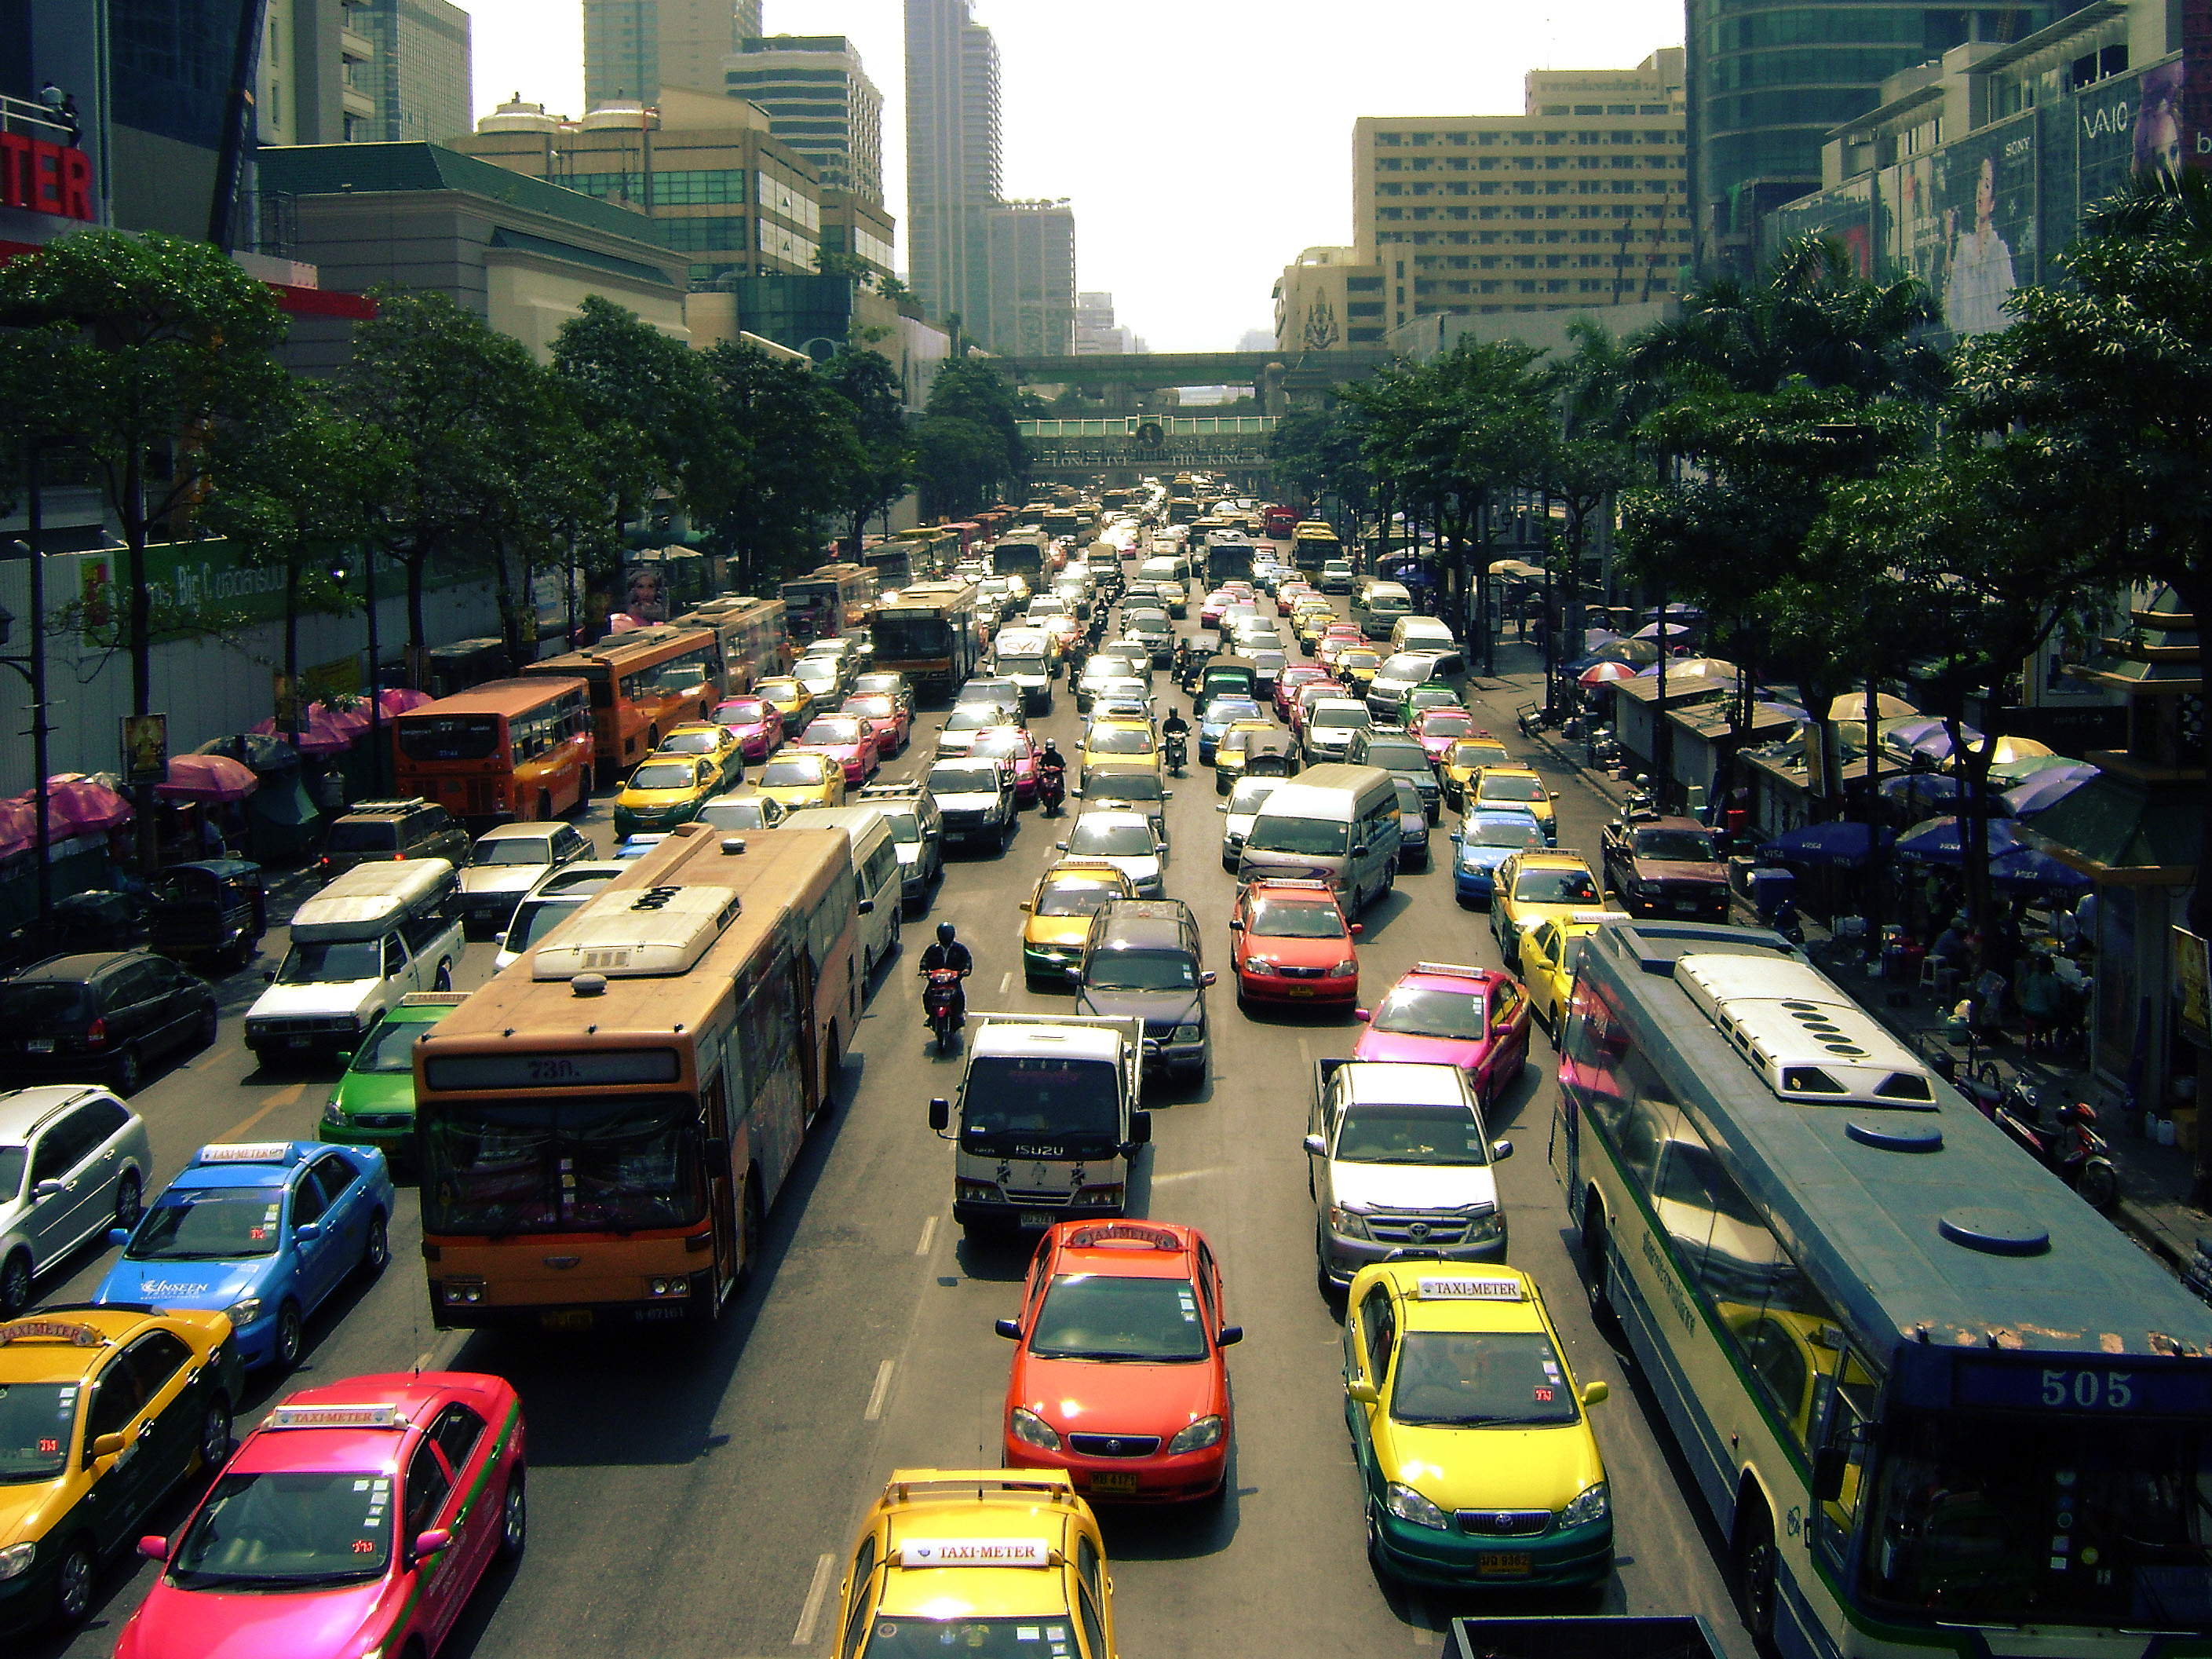 Авто бангкок. Bangkok transport. Тук тук Бангкок. Тук тук Тайланд Бангкок. Дорога Бангкок Паттайя.